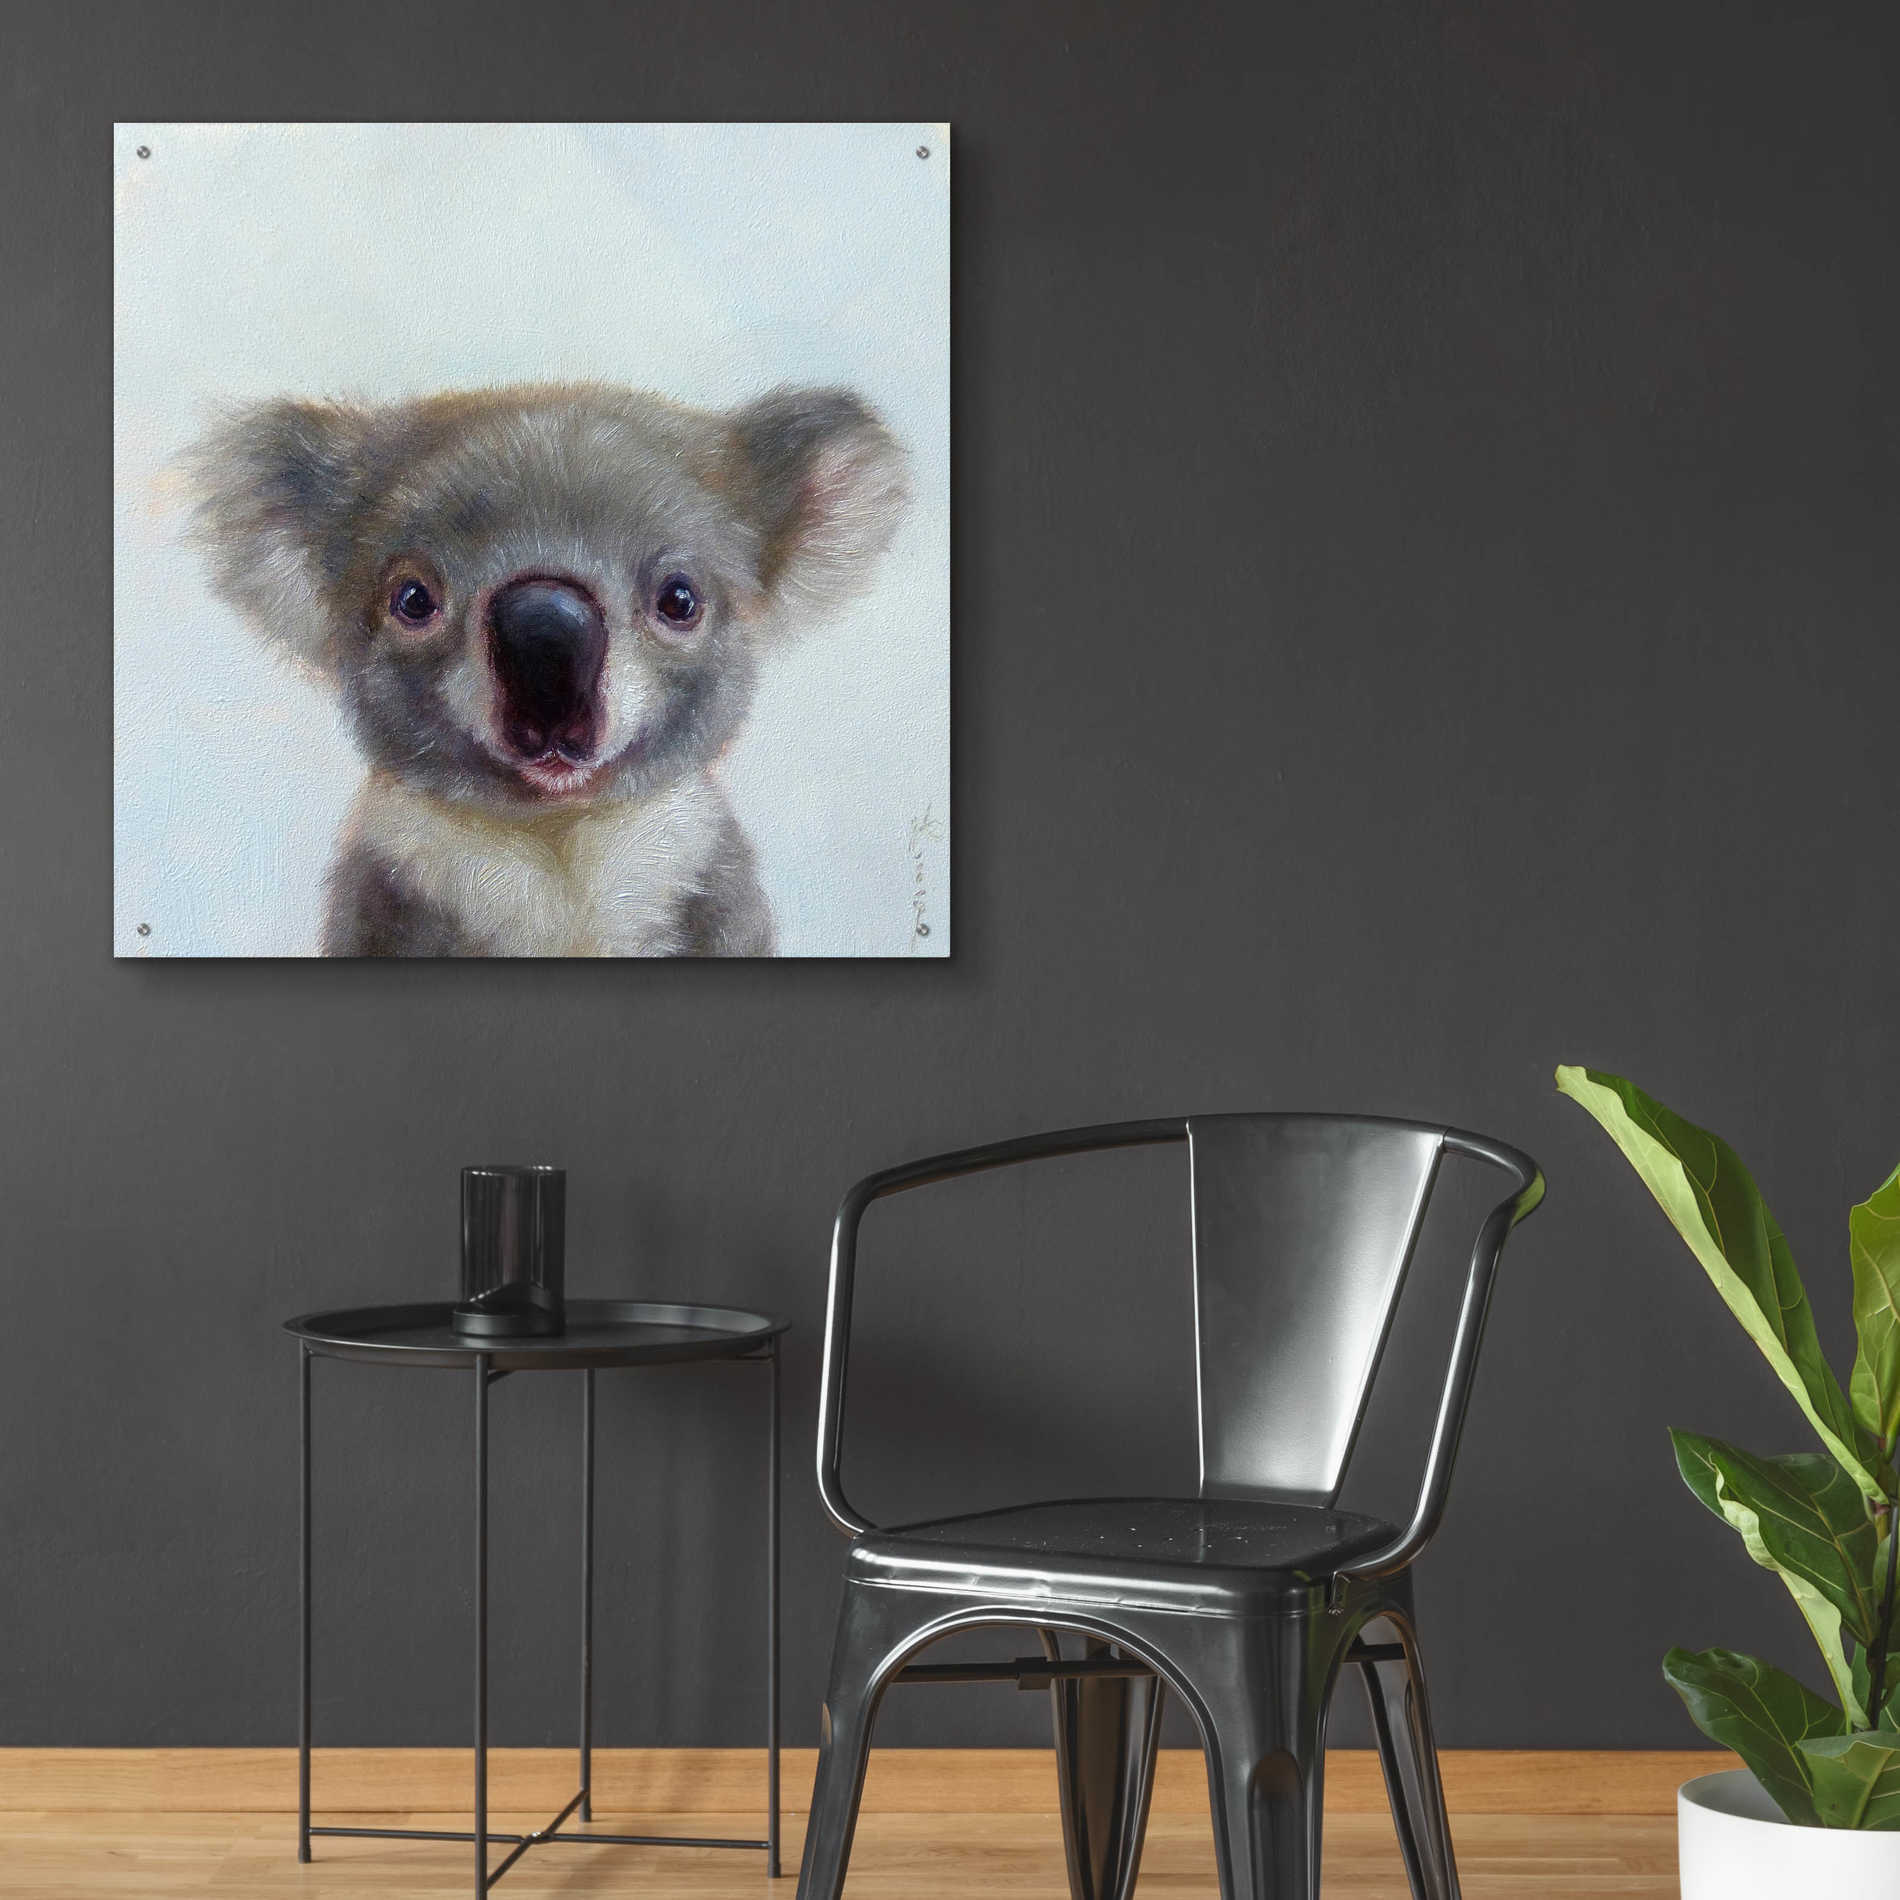 Epic Art 'Lil Koala' by Lucia Heffernan, Acrylic Glass Wall Art,36x36